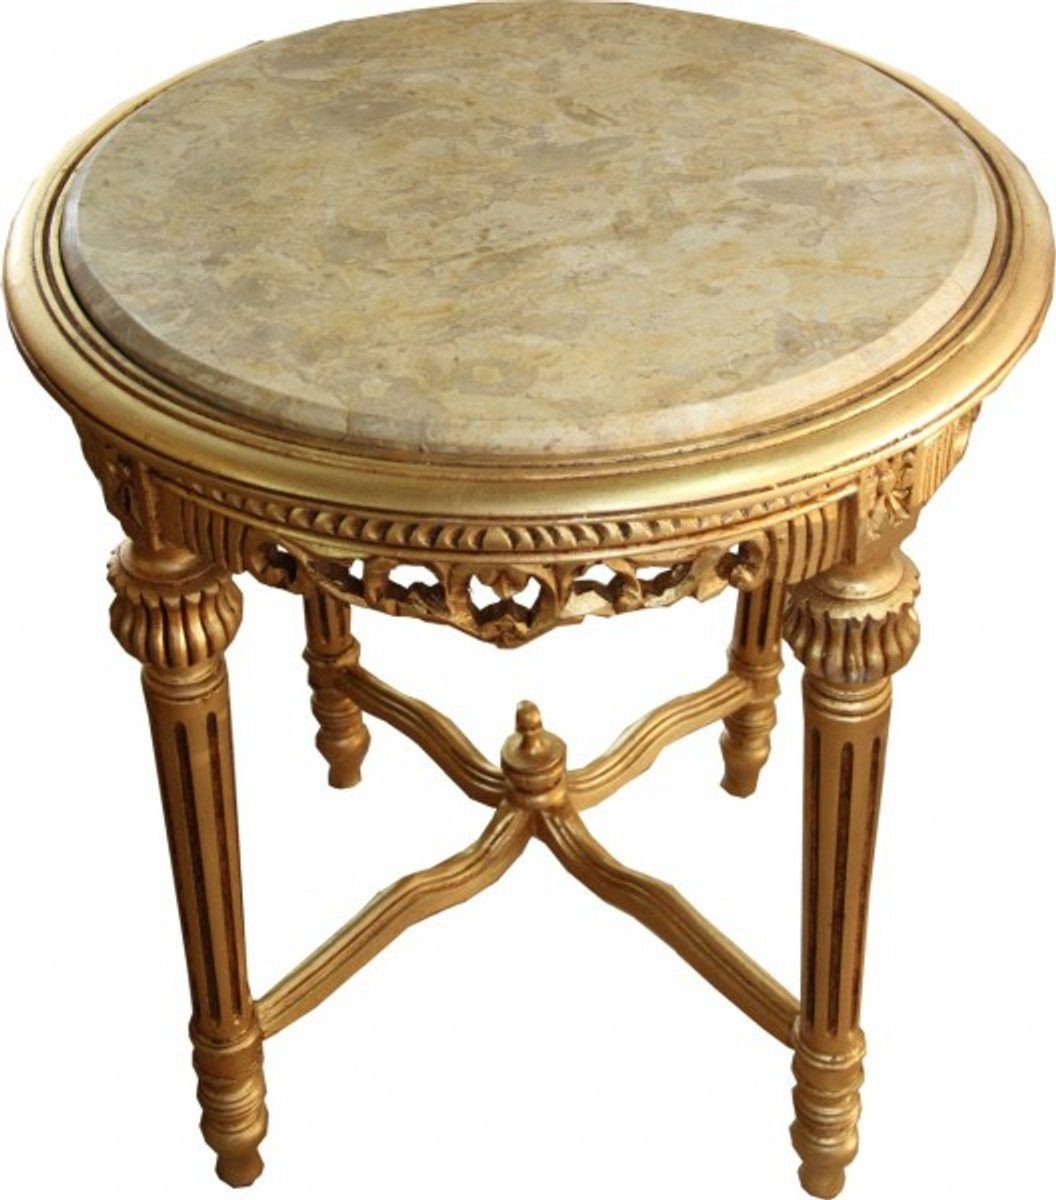 Casa Padrino Beistelltisch Großer Barock Beistelltisch Rundtisch mit Marmorplatte Gold / Creme - Antik Stil Tisch Möbel H 71 cm B 63 cm